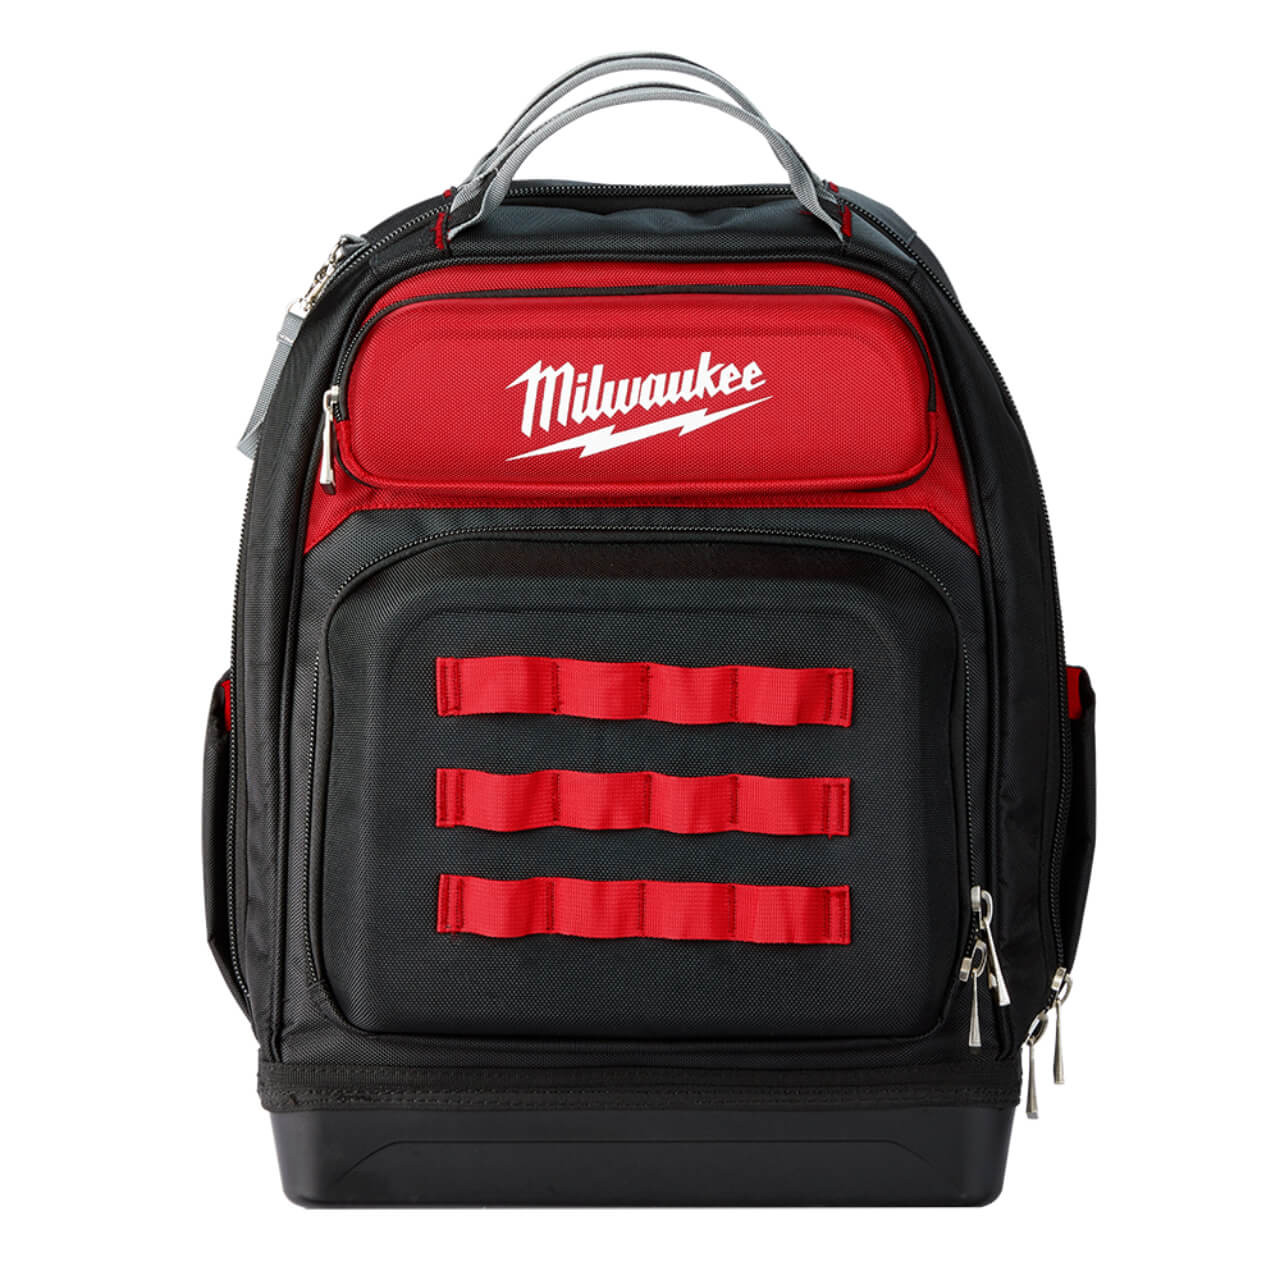 Milwaukee Ultimate Jobsite Backpack